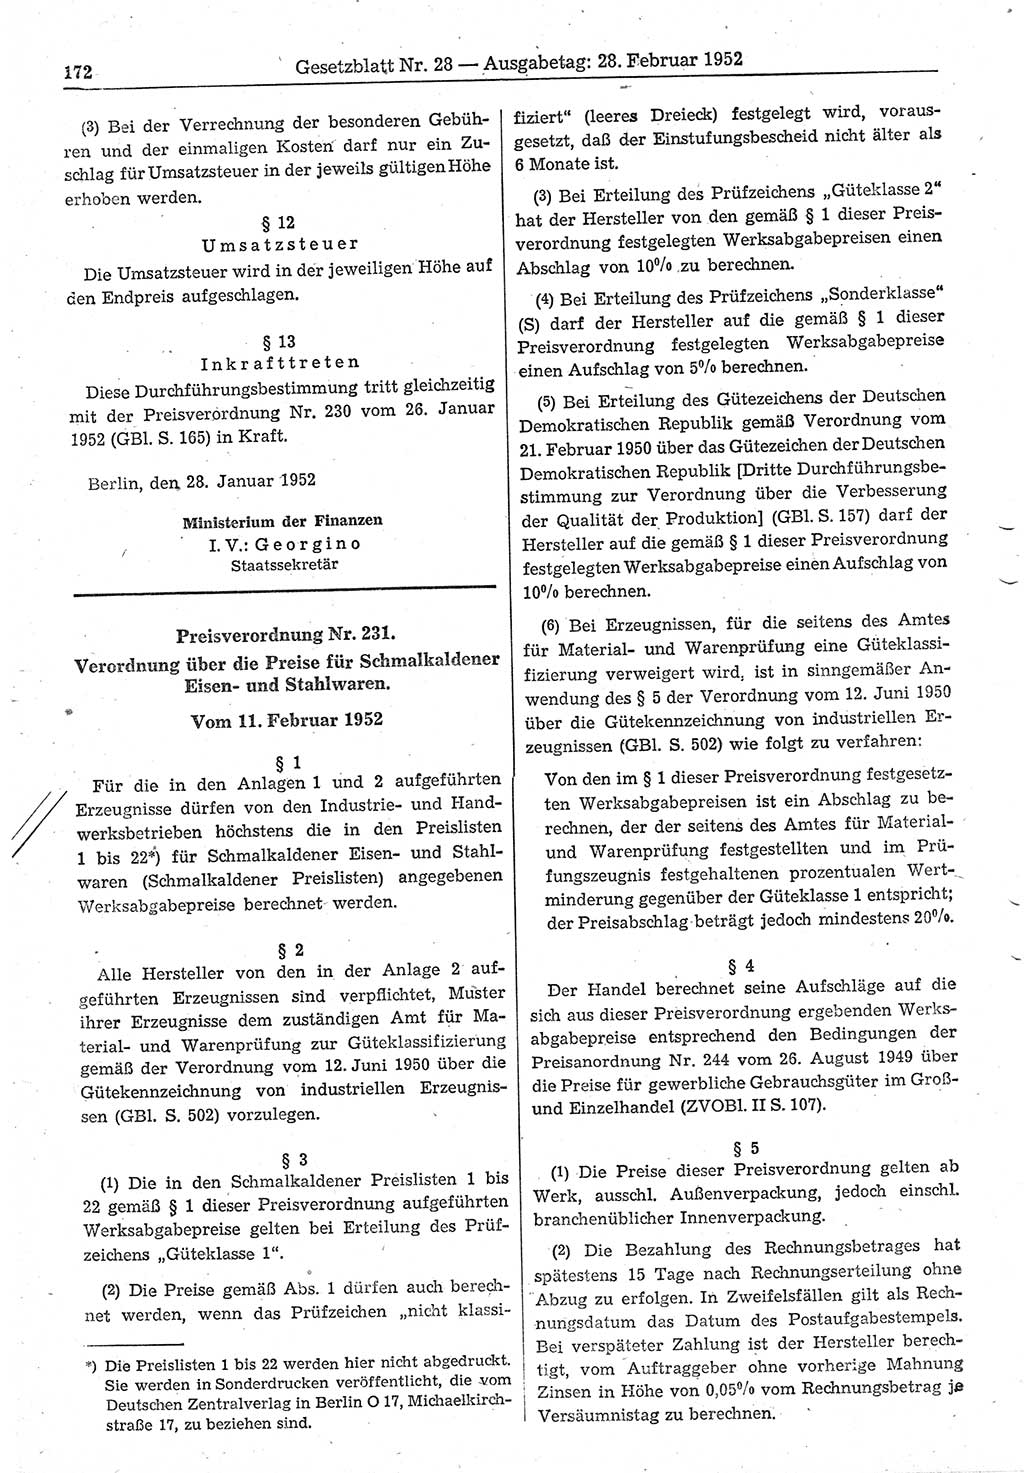 Gesetzblatt (GBl.) der Deutschen Demokratischen Republik (DDR) 1952, Seite 172 (GBl. DDR 1952, S. 172)